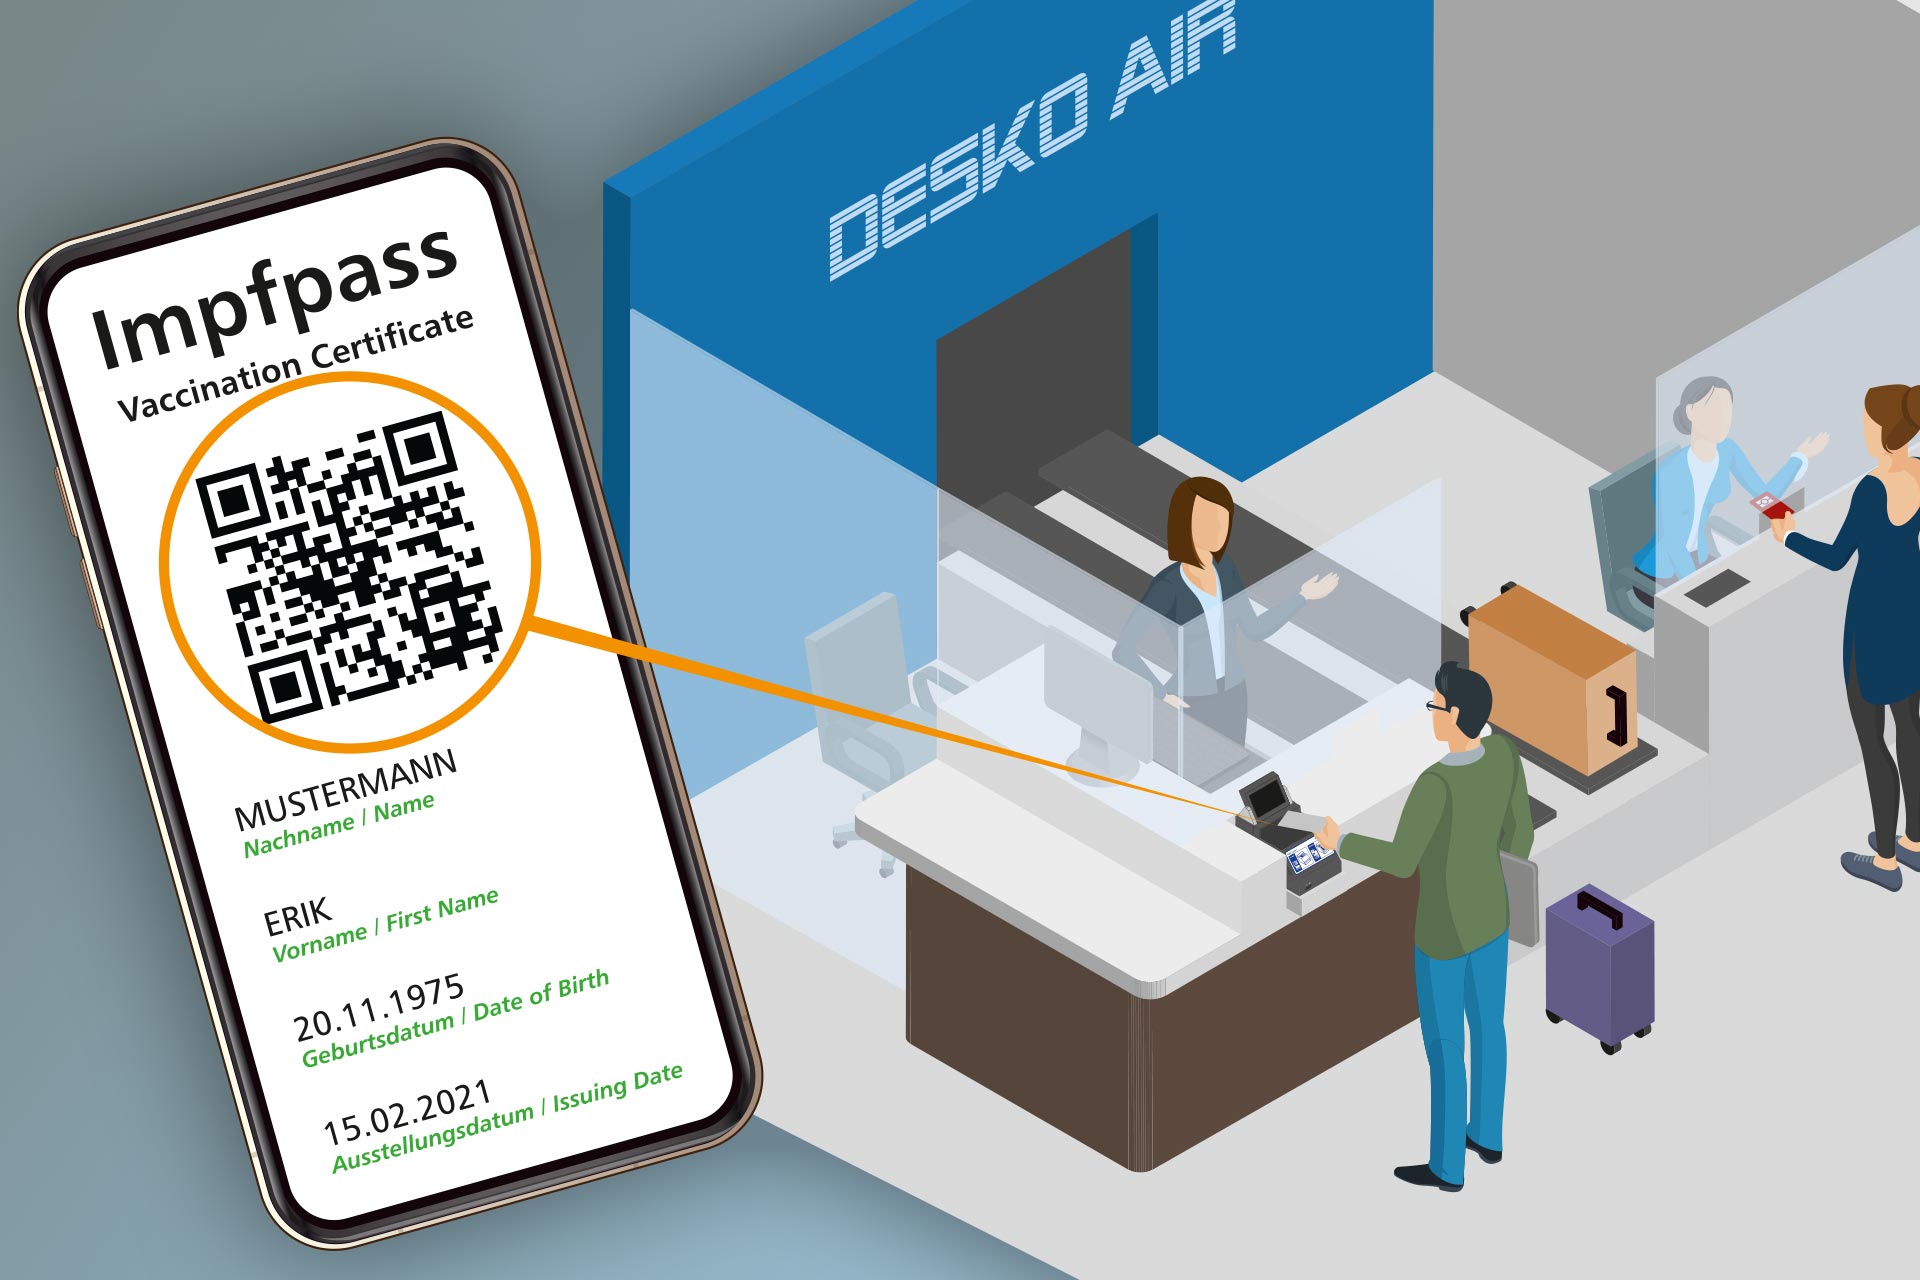 +++ Update +++ DESKO -The Digital Green Certificate